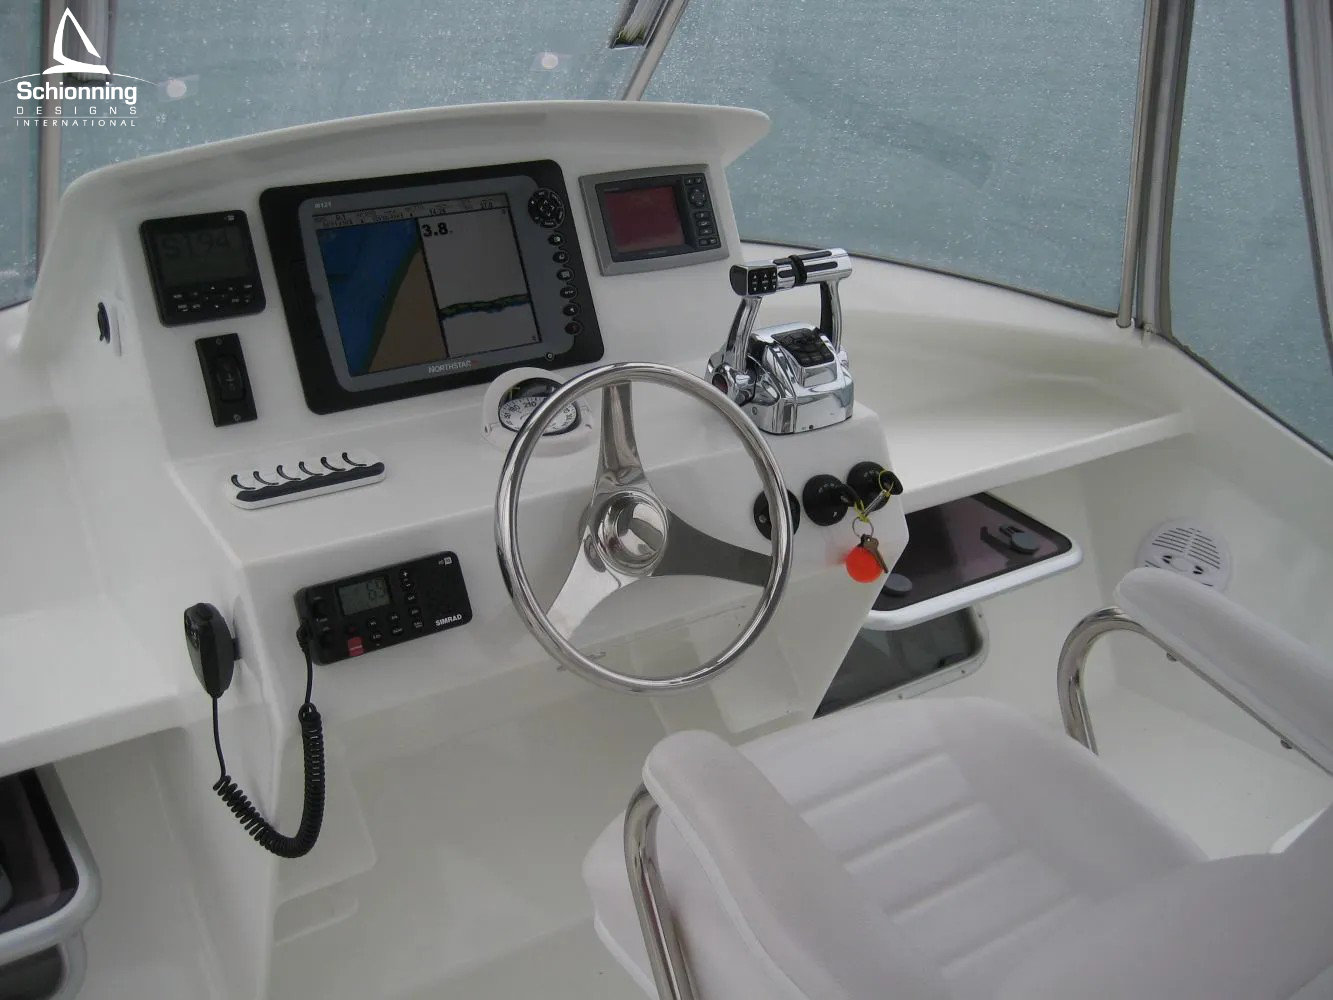 Growler 950 VT Power Catamaran - SDI - Schionning Designs International